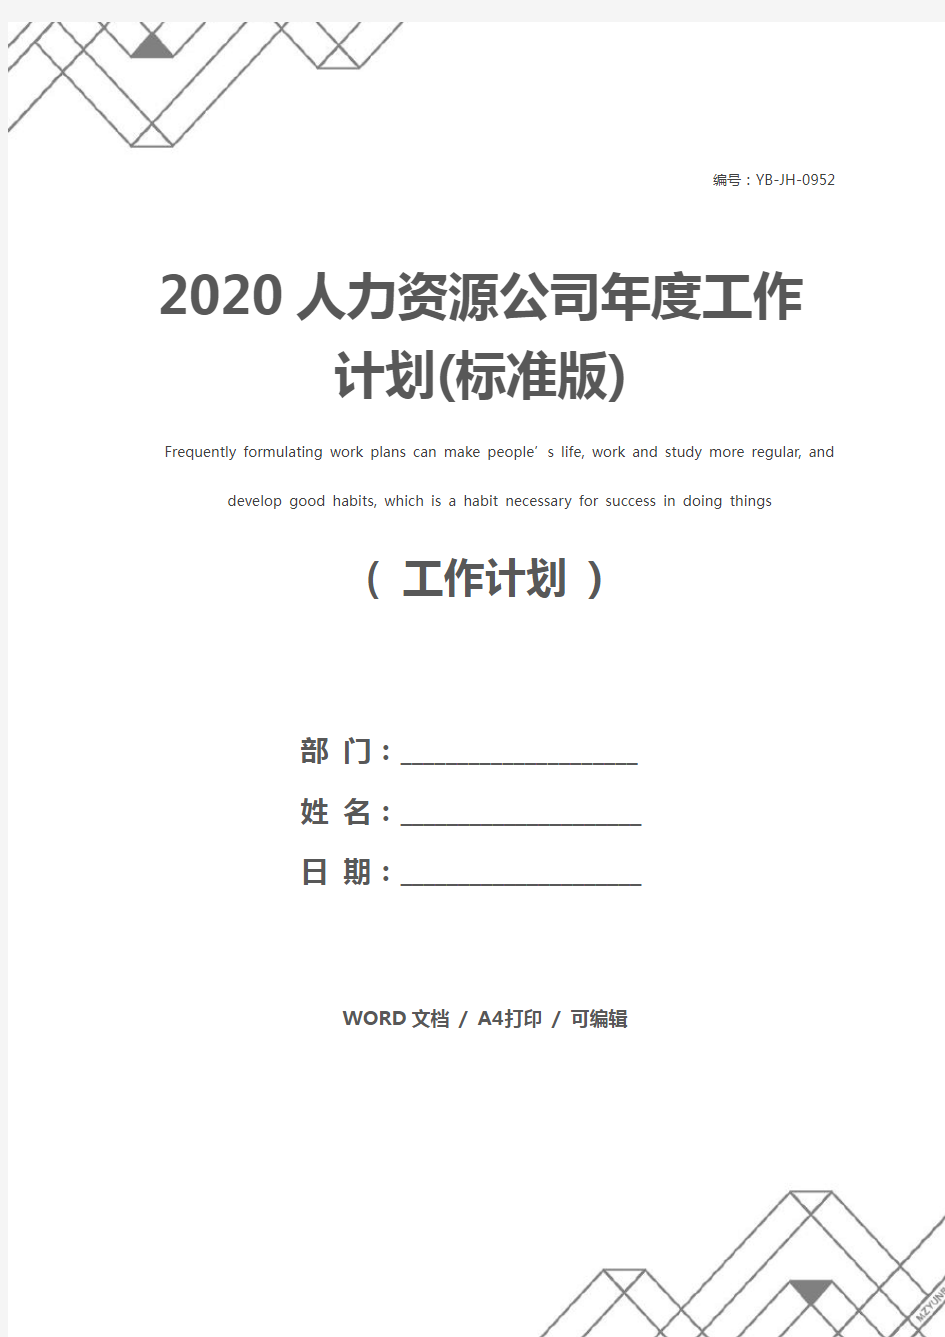 2020人力资源公司年度工作计划(标准版)